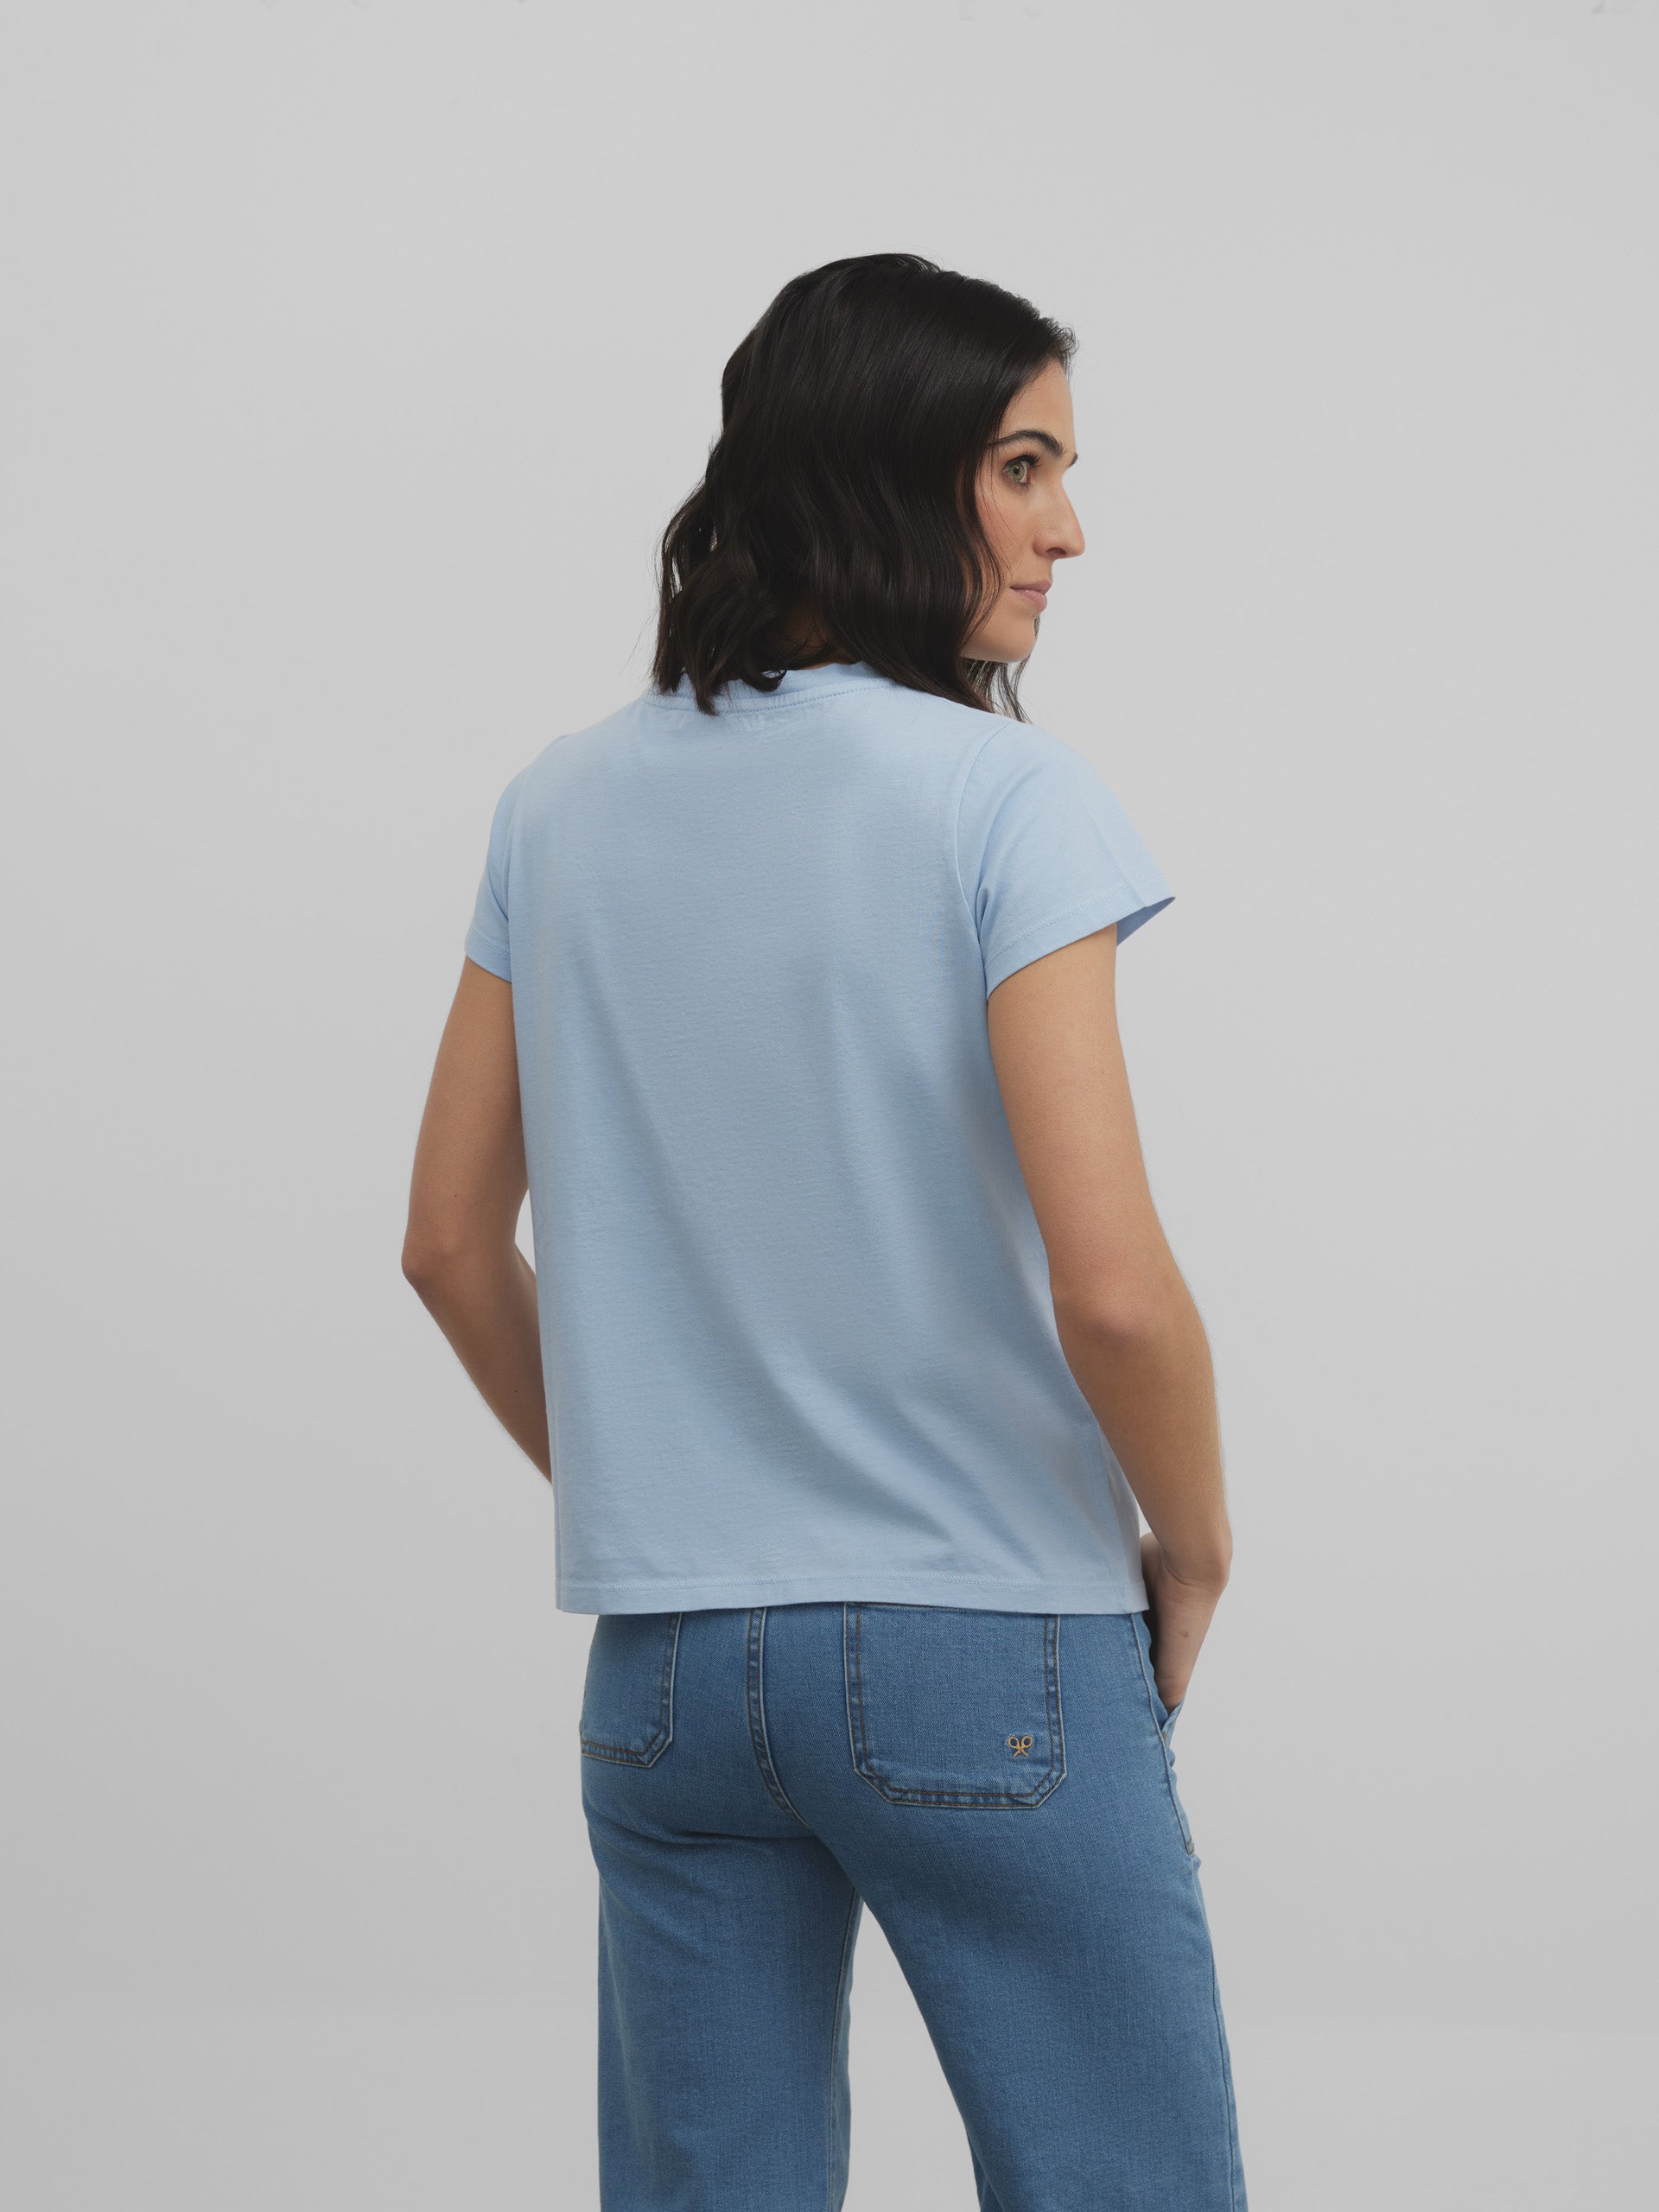 Light blue classic women's t-shirt